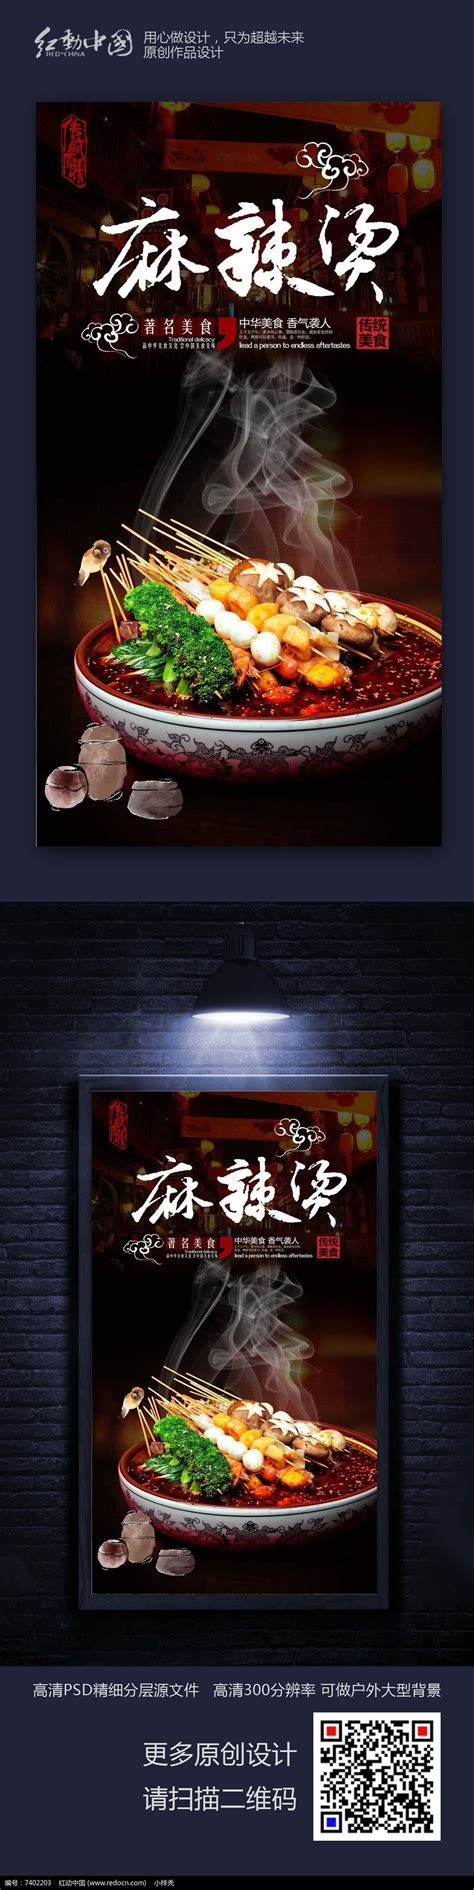 创意时尚美食麻辣烫宣传海报设计图片下载_红动中国